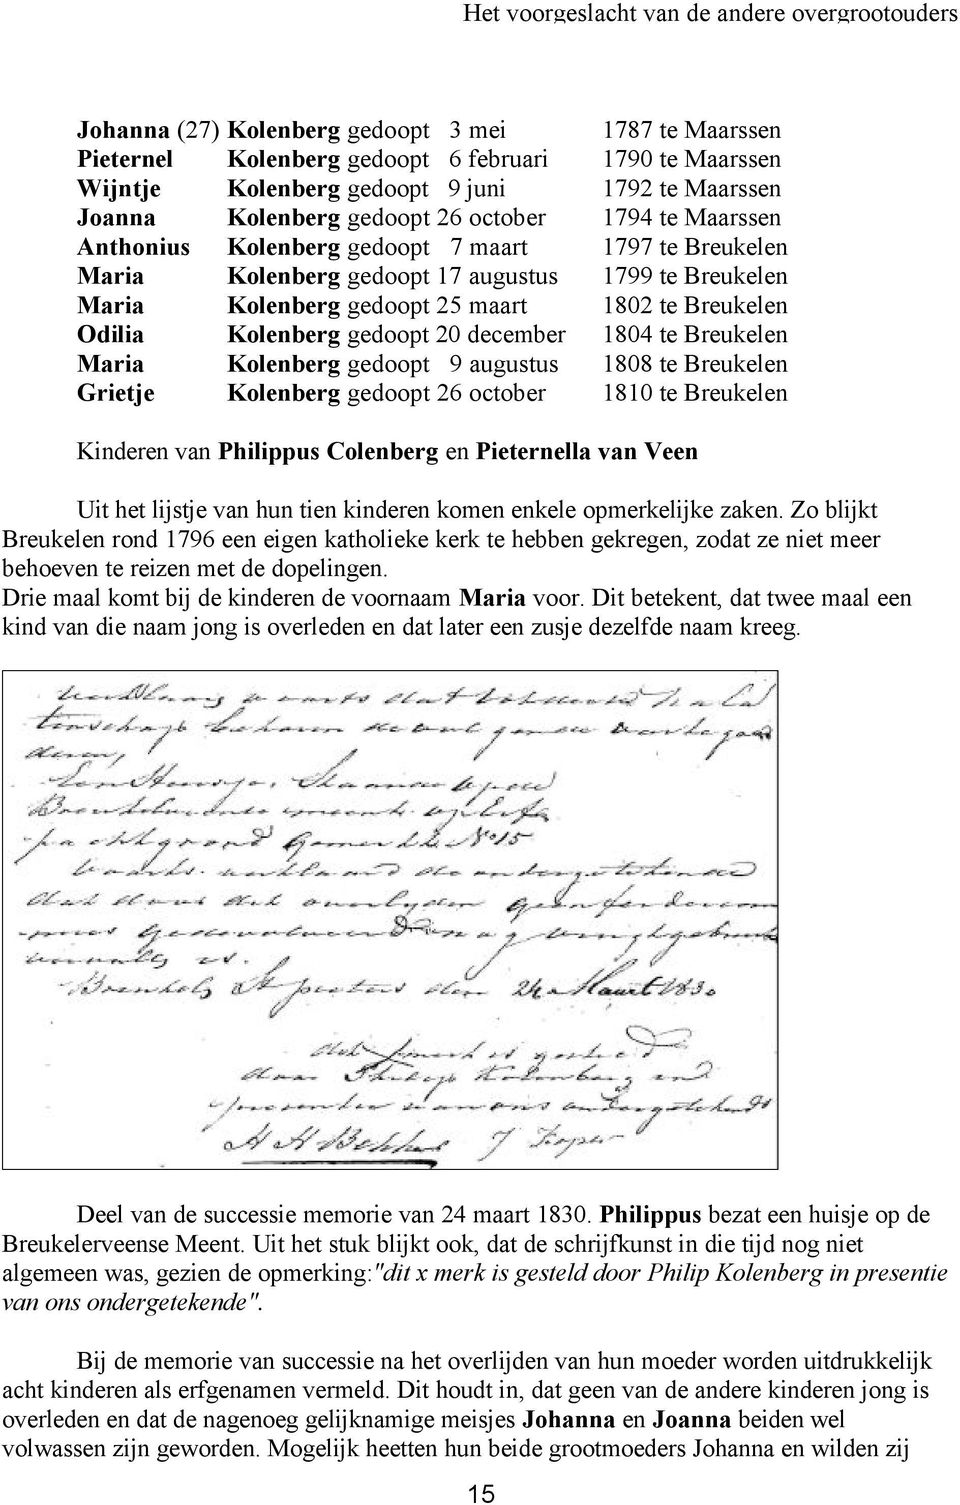 maart 1802 te Breukelen Odilia Kolenberg gedoopt 20 december 1804 te Breukelen Maria Kolenberg gedoopt 9 augustus 1808 te Breukelen Grietje Kolenberg gedoopt 26 october 1810 te Breukelen Kinderen van